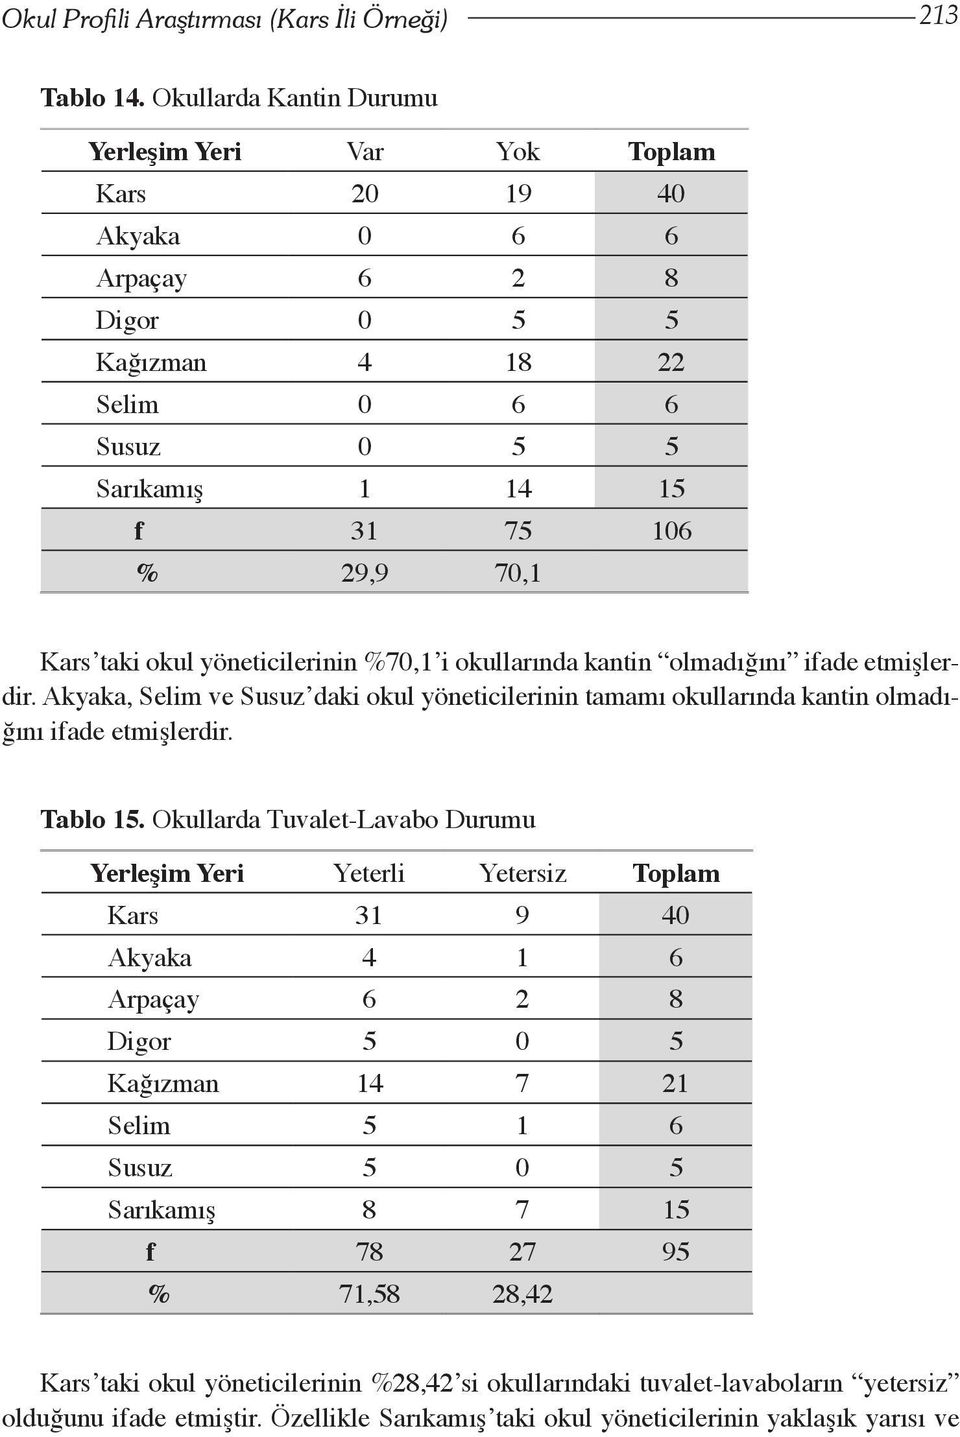 okul yöneticilerinin %70,1 i okullarında kantin olmadığını ifade etmişlerdir. kyaka, Selim ve Susuz daki okul yöneticilerinin tamamı okullarında kantin olmadığını ifade etmişlerdir. Tablo 15.